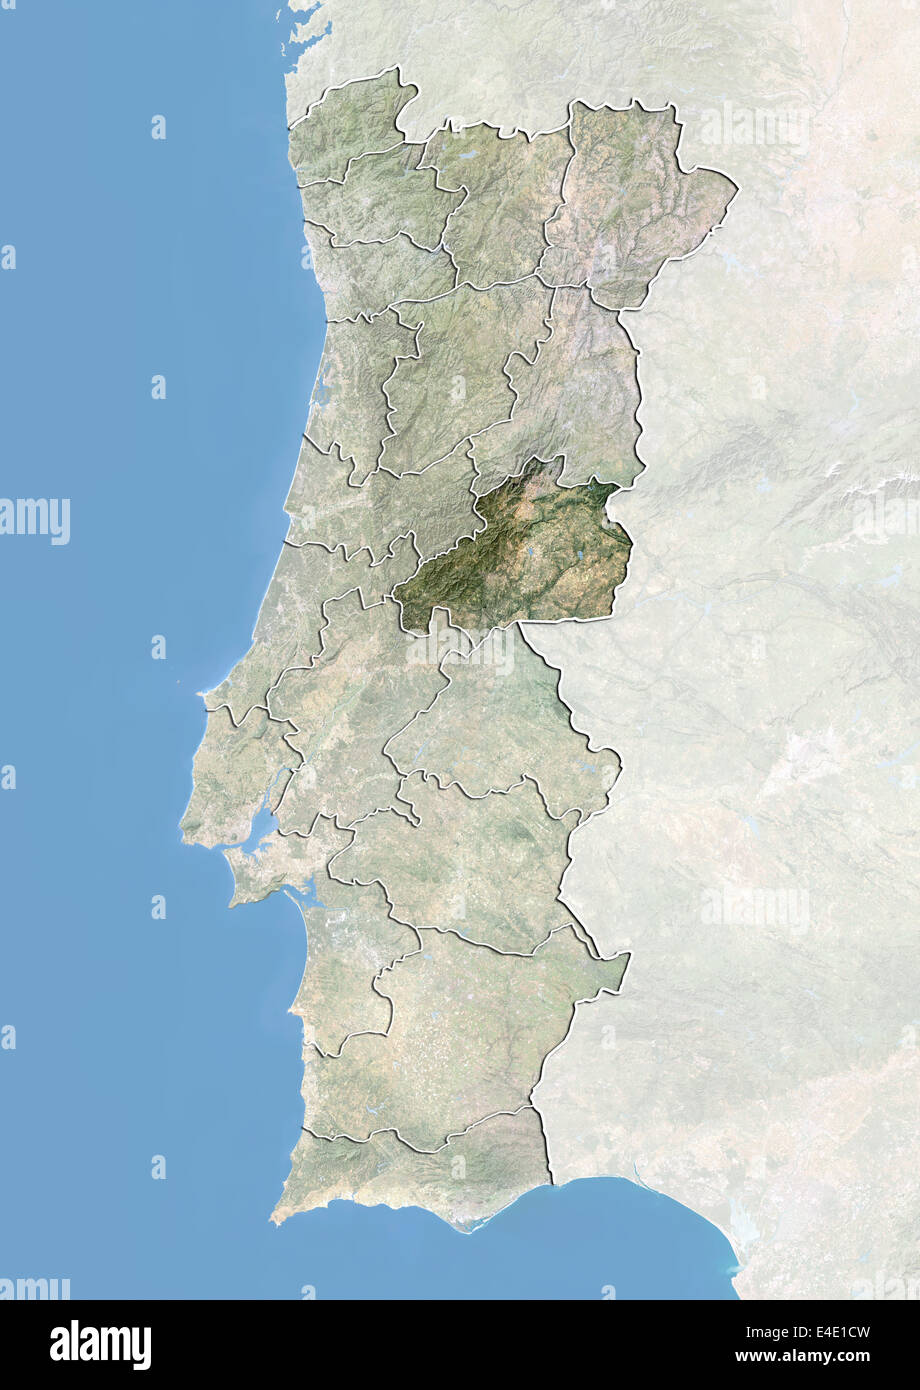 Le Portugal et le district de Castelo Branco, image satellite avec effet de choc Banque D'Images